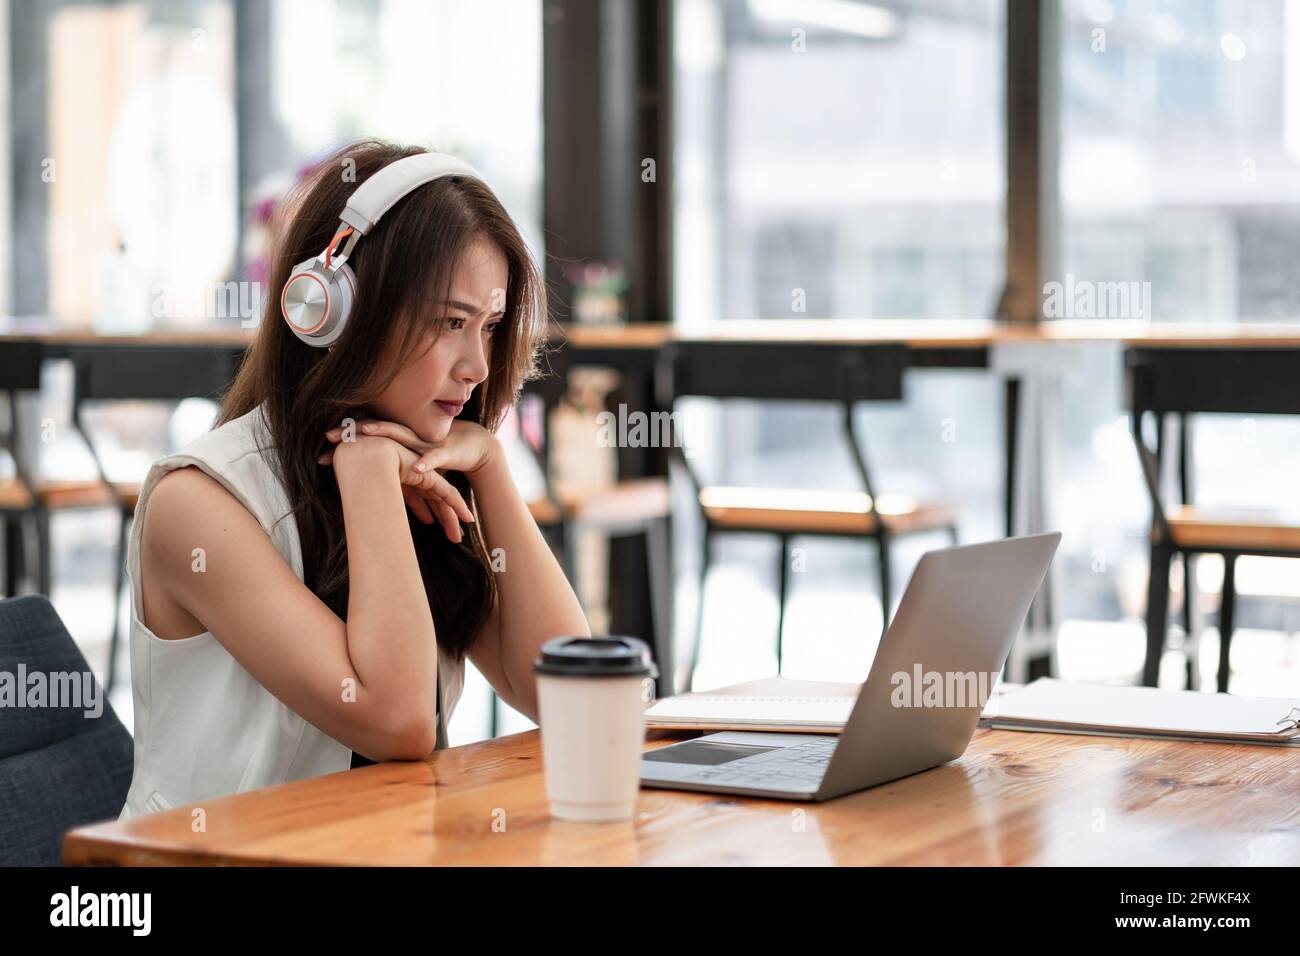 Jeunes femmes asiatiques concentrées portant un casque regarder l'ordinateur portable pour l'étude en ligne, attrayante femme étudiant en langue d'apprentissage, regarder en ligne Banque D'Images